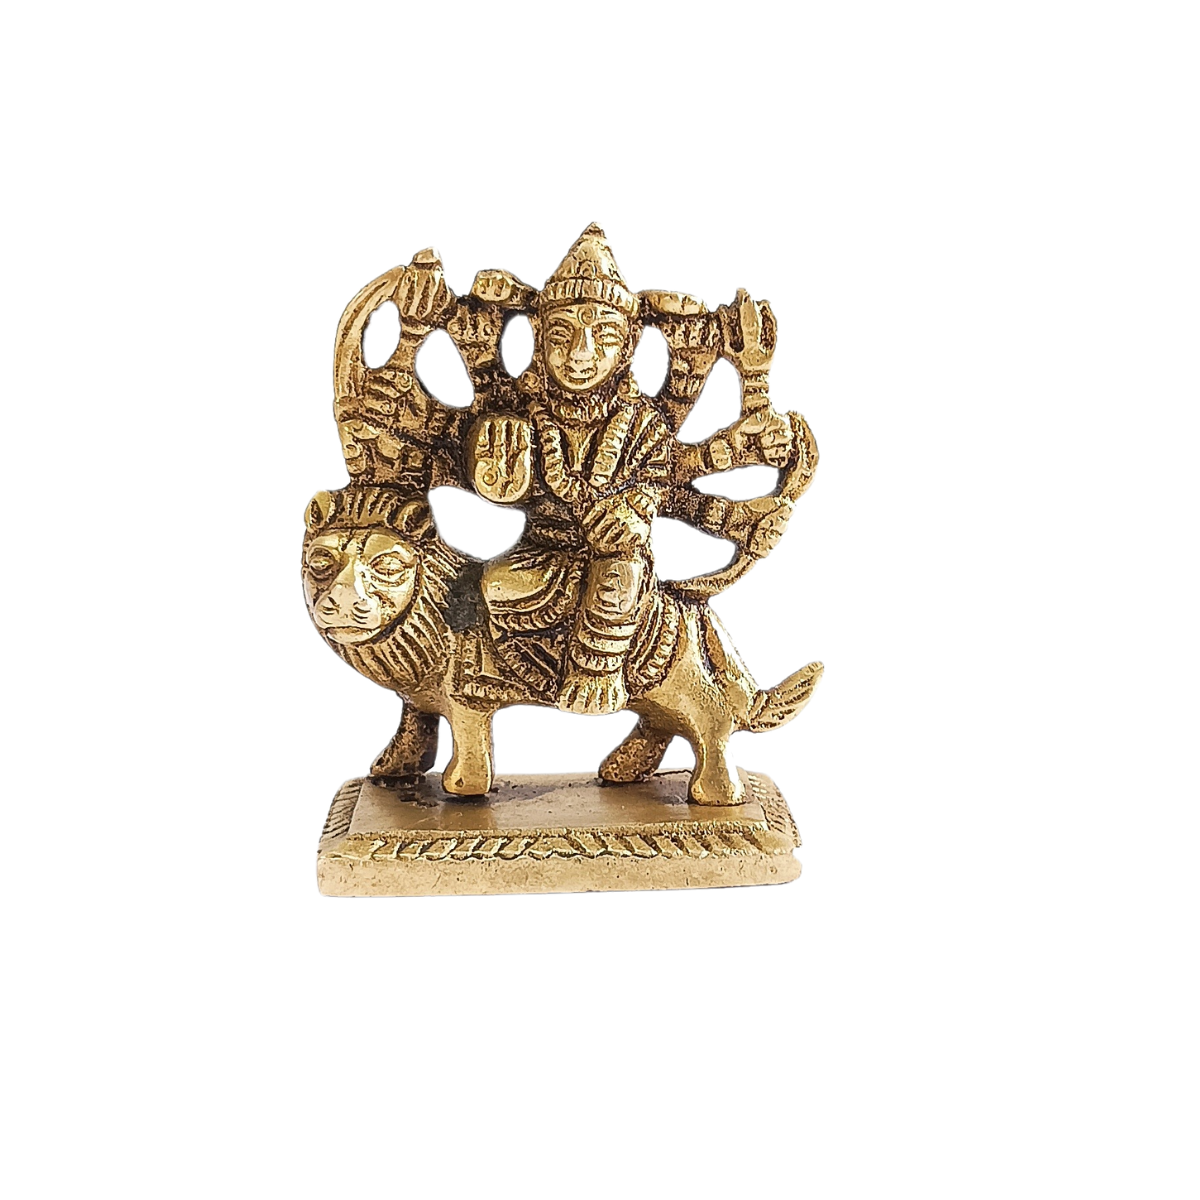 Durga Mata Brass (Pital) Murti - Durga Devi Statue - Goddess Durga Mata Murti - Sherawali Mata Idol - Pital Murti (Brass) For Pooja, Decoration & Gifts